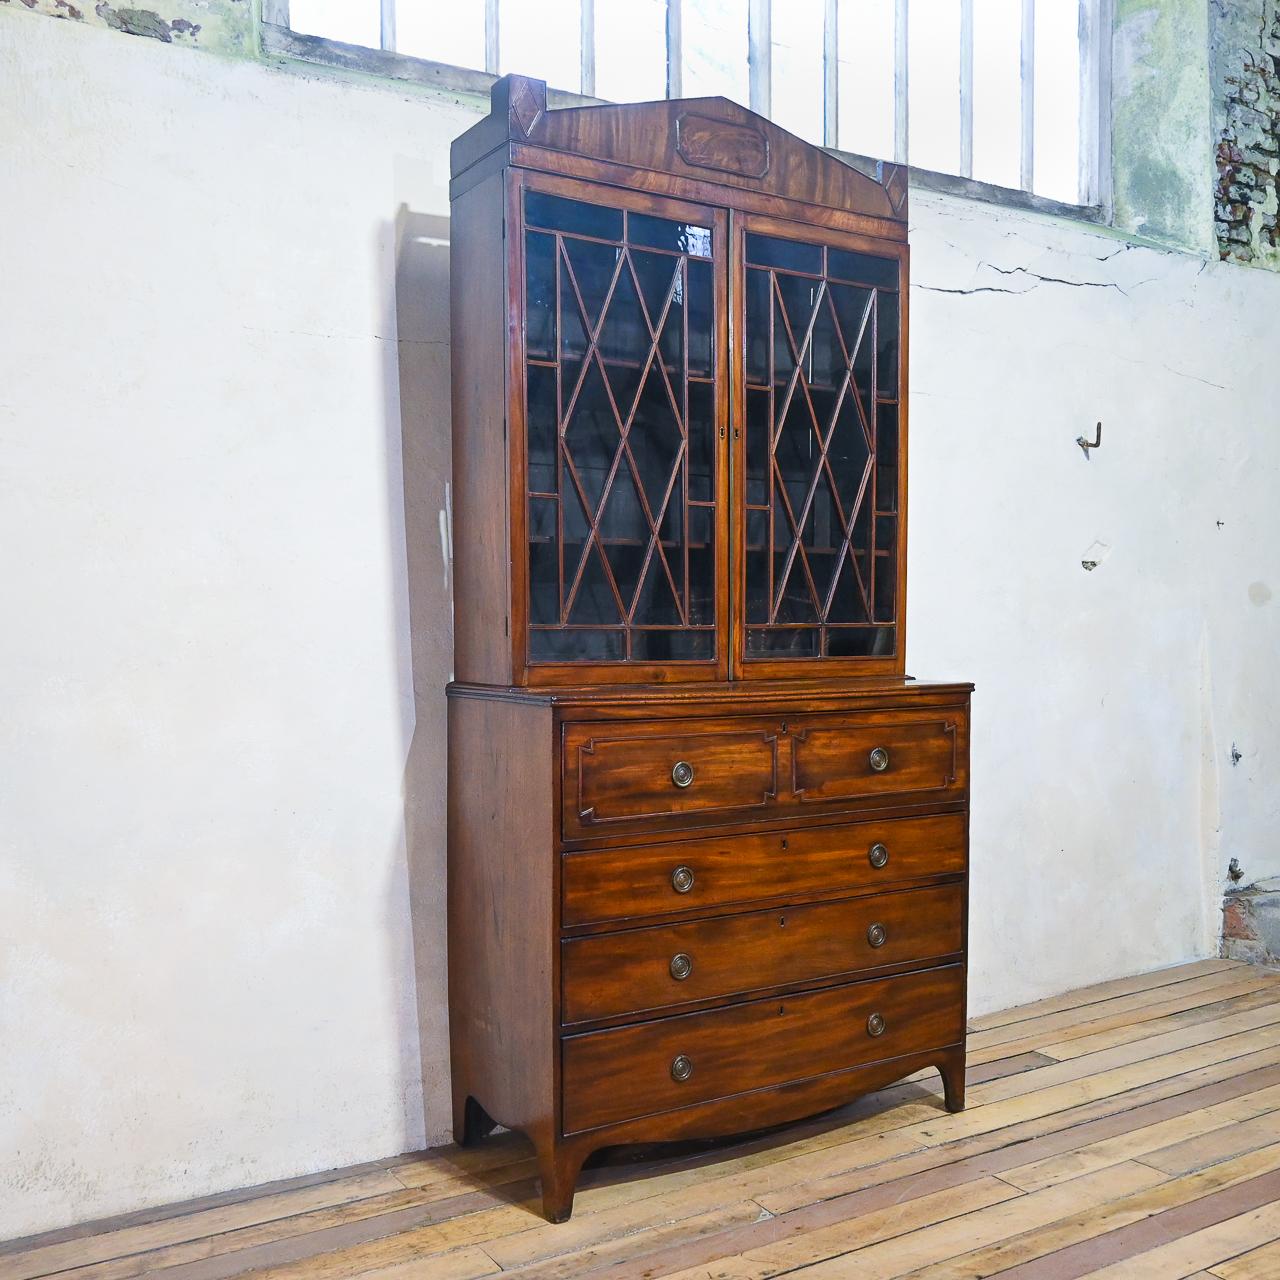 Ein Regency-Mahagoni-Sekretär-Bücherregal - um 1820.  Anzeige eines Sturzes 
Schreibpult, das einen eingebauten Innenraum umschließt.  Erhöht auf geformten, gespreizten Klammerfüßen.  
 
Höhe - 236cm 
Breite - 115cm breit 
Tiefe - 50cm tief 

Der